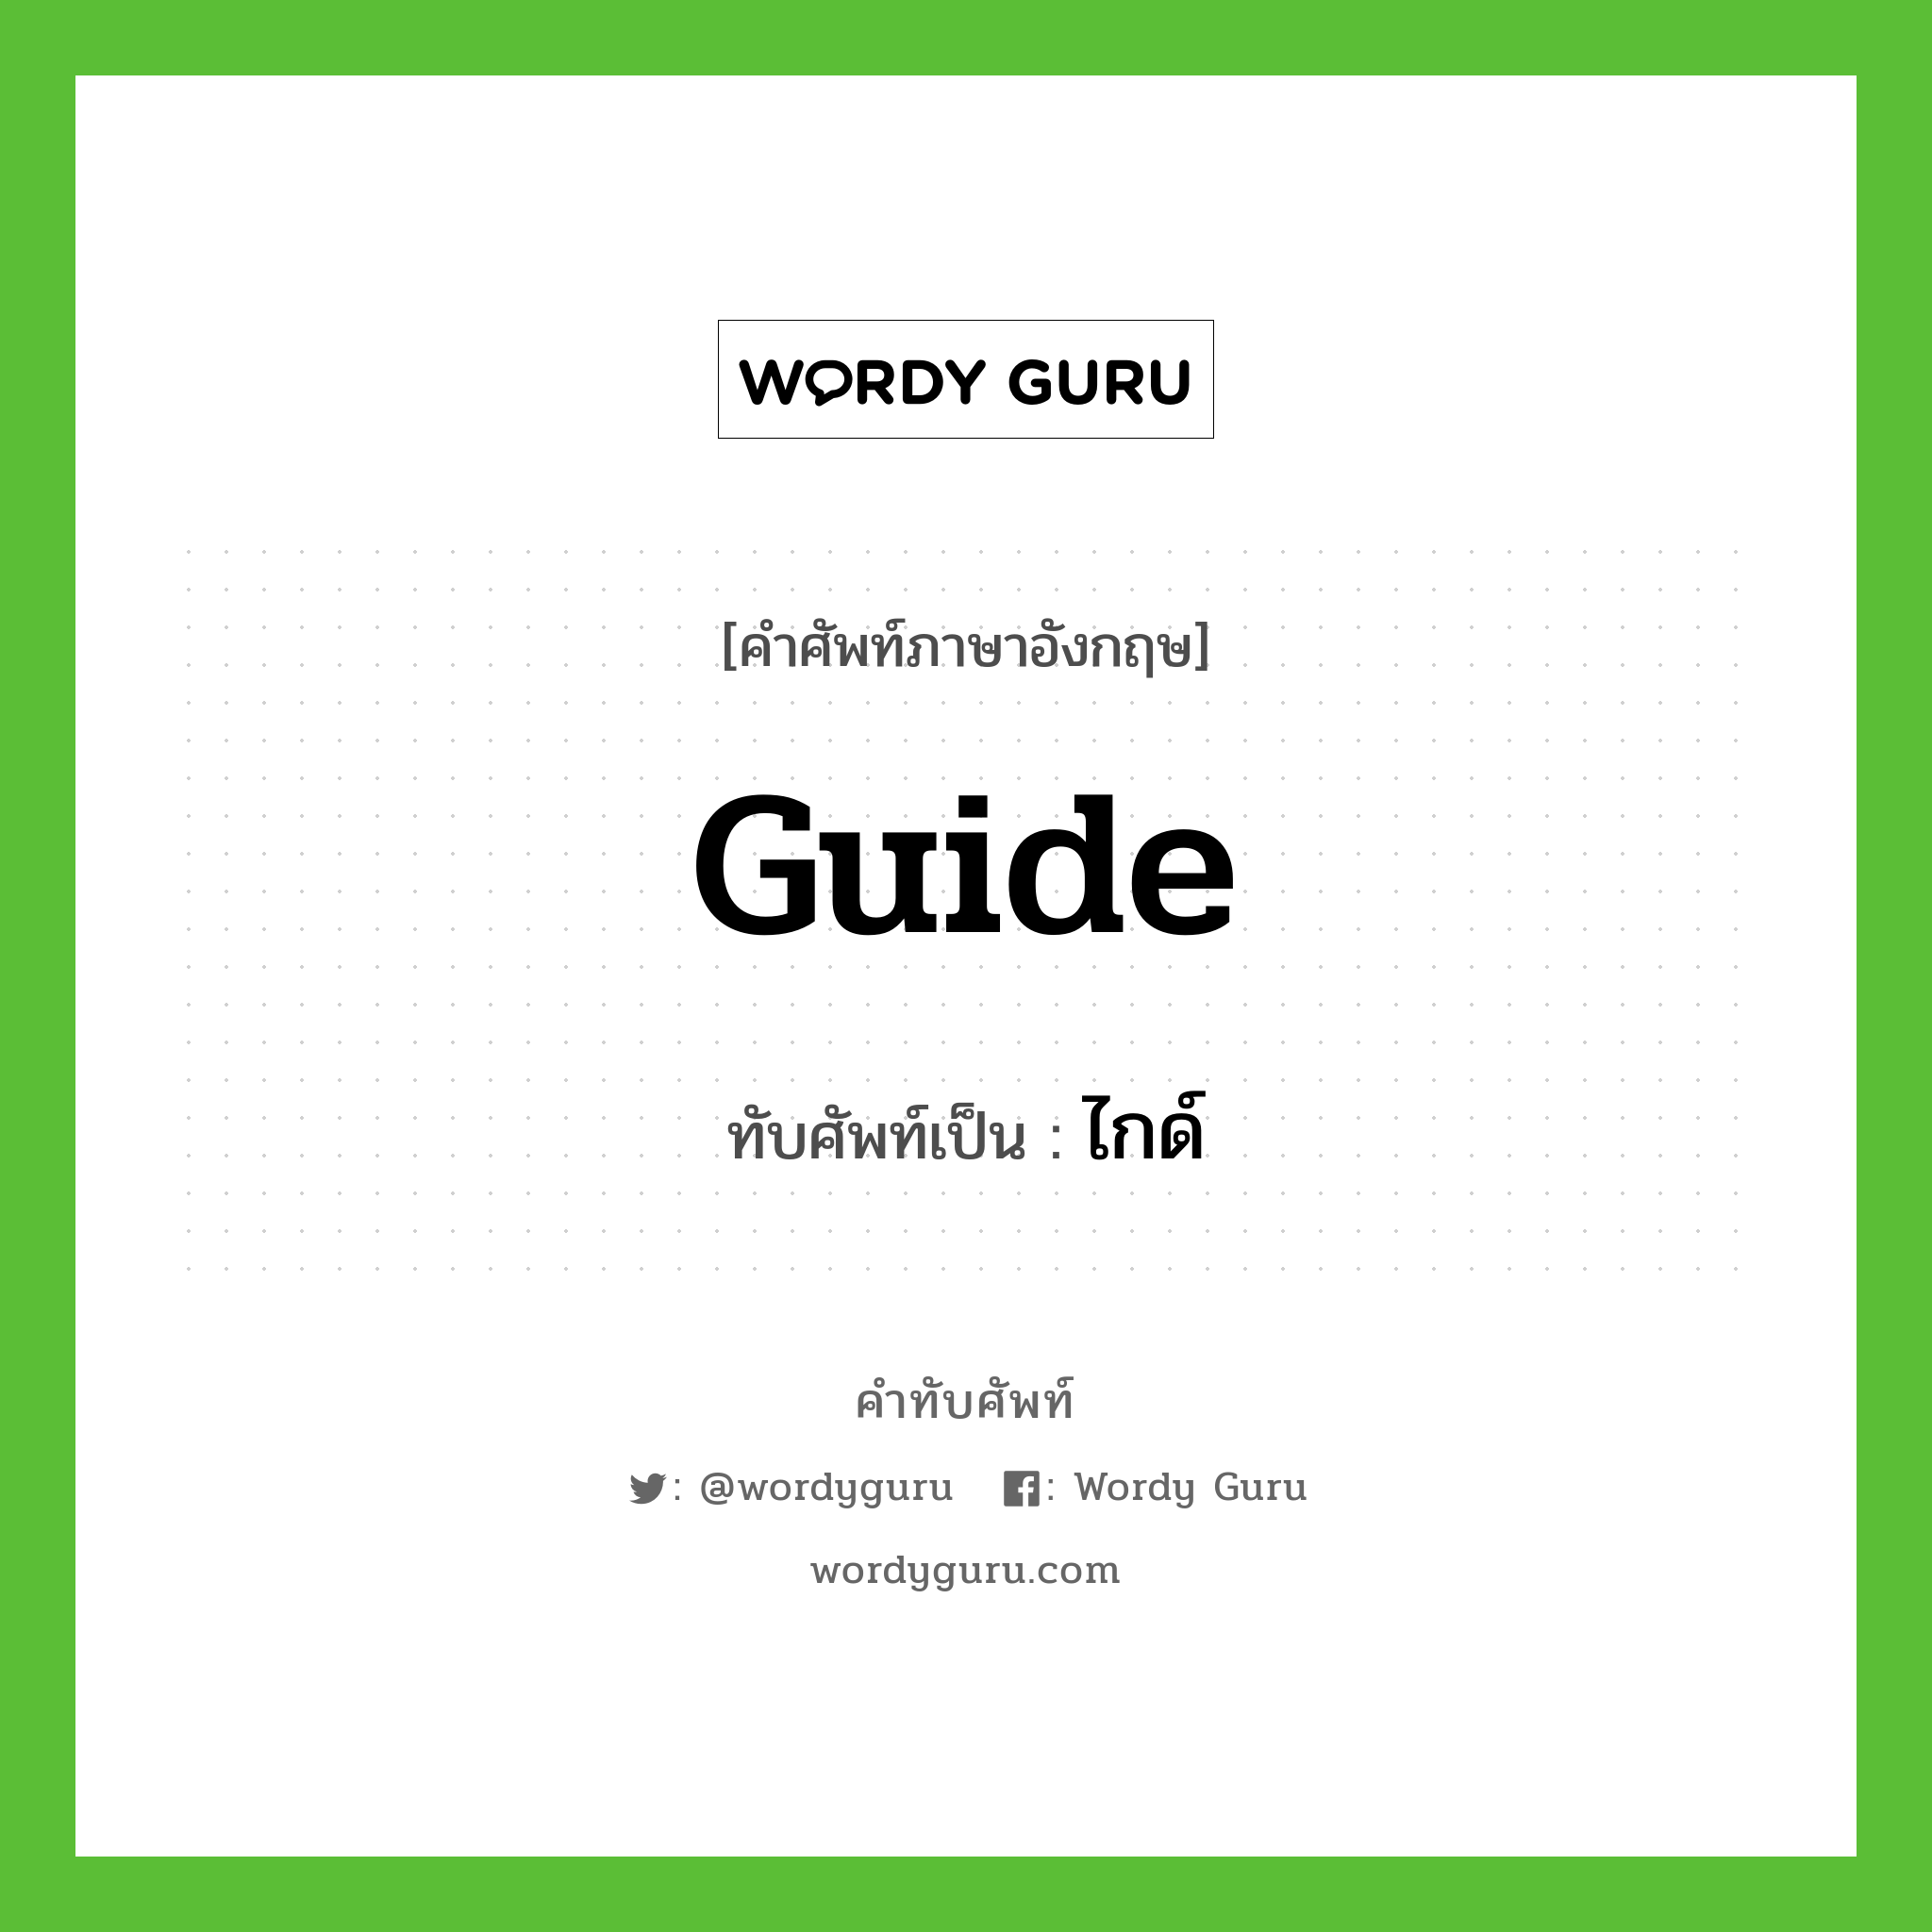 guide เขียนเป็นคำไทยว่าอะไร?, คำศัพท์ภาษาอังกฤษ guide ทับศัพท์เป็น ไกด์